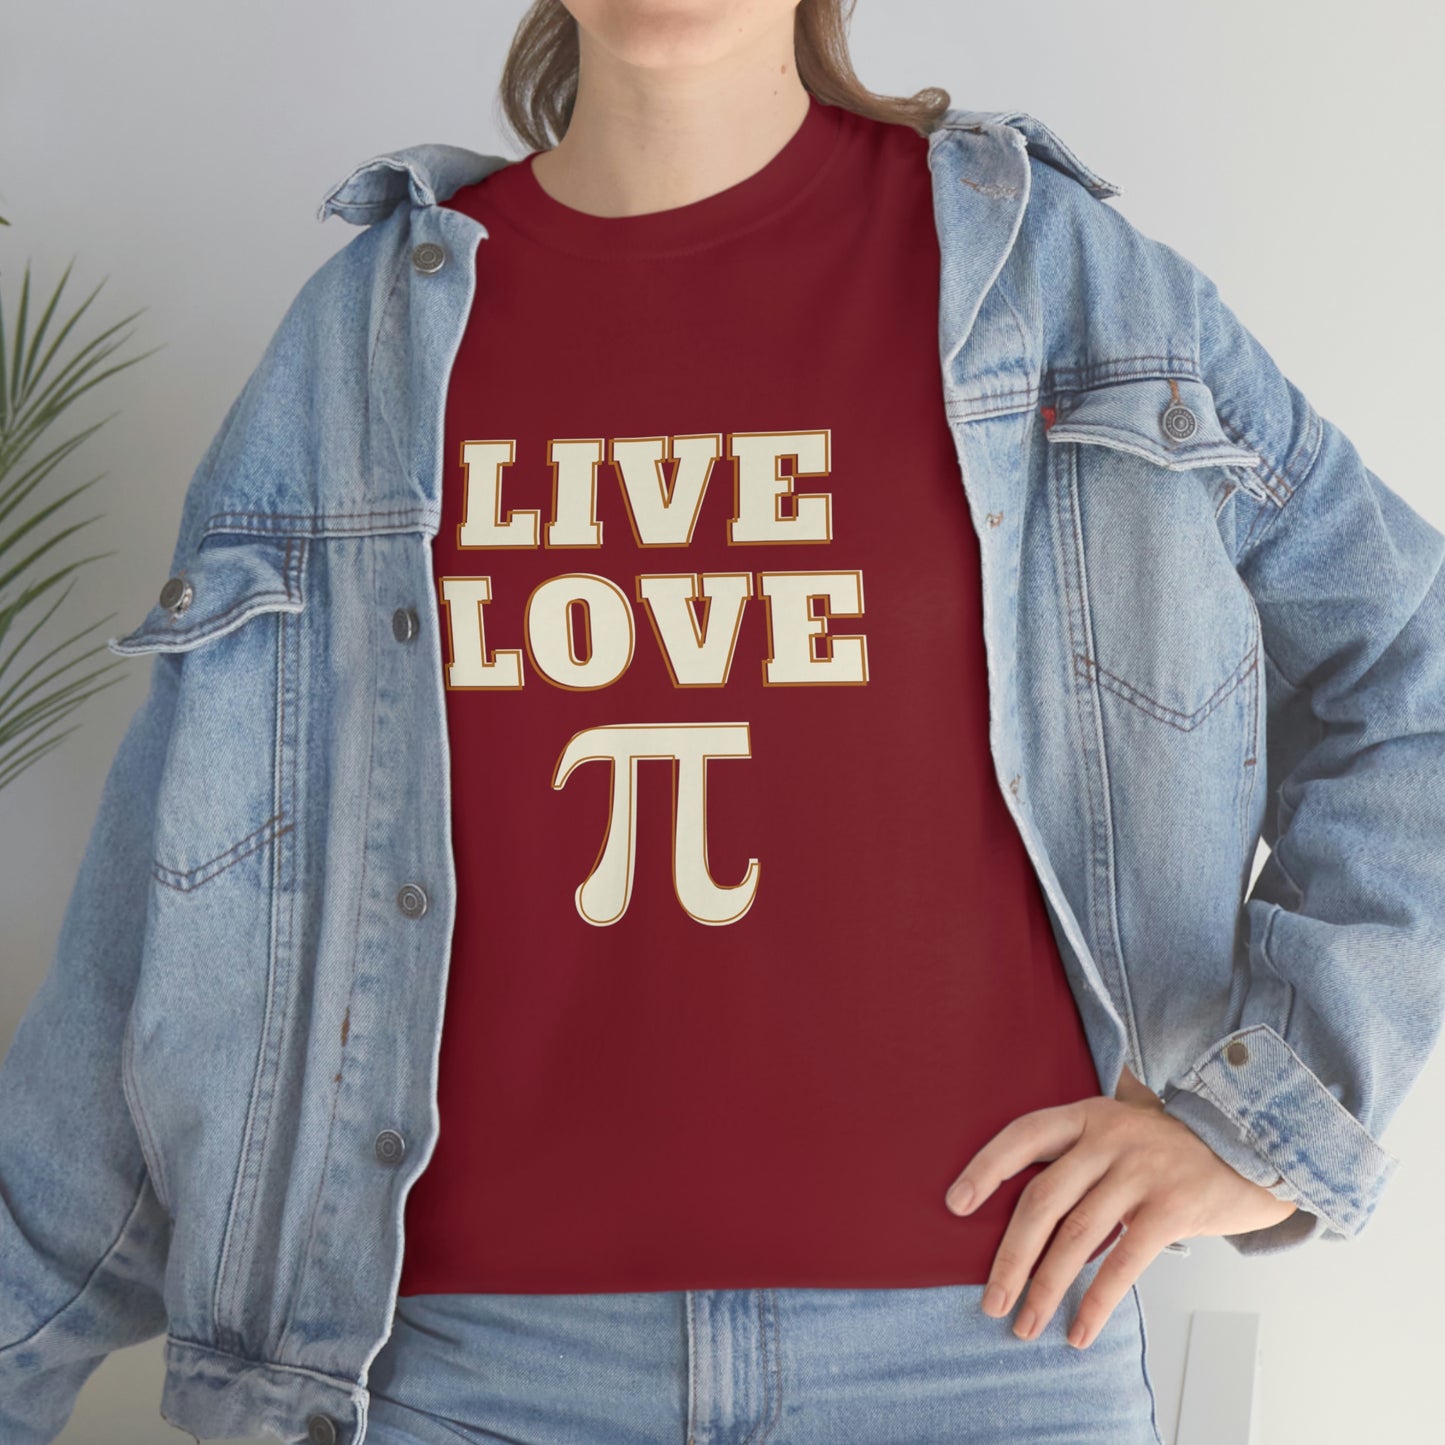 Live Love Pi Unisex Cotton T-shirt